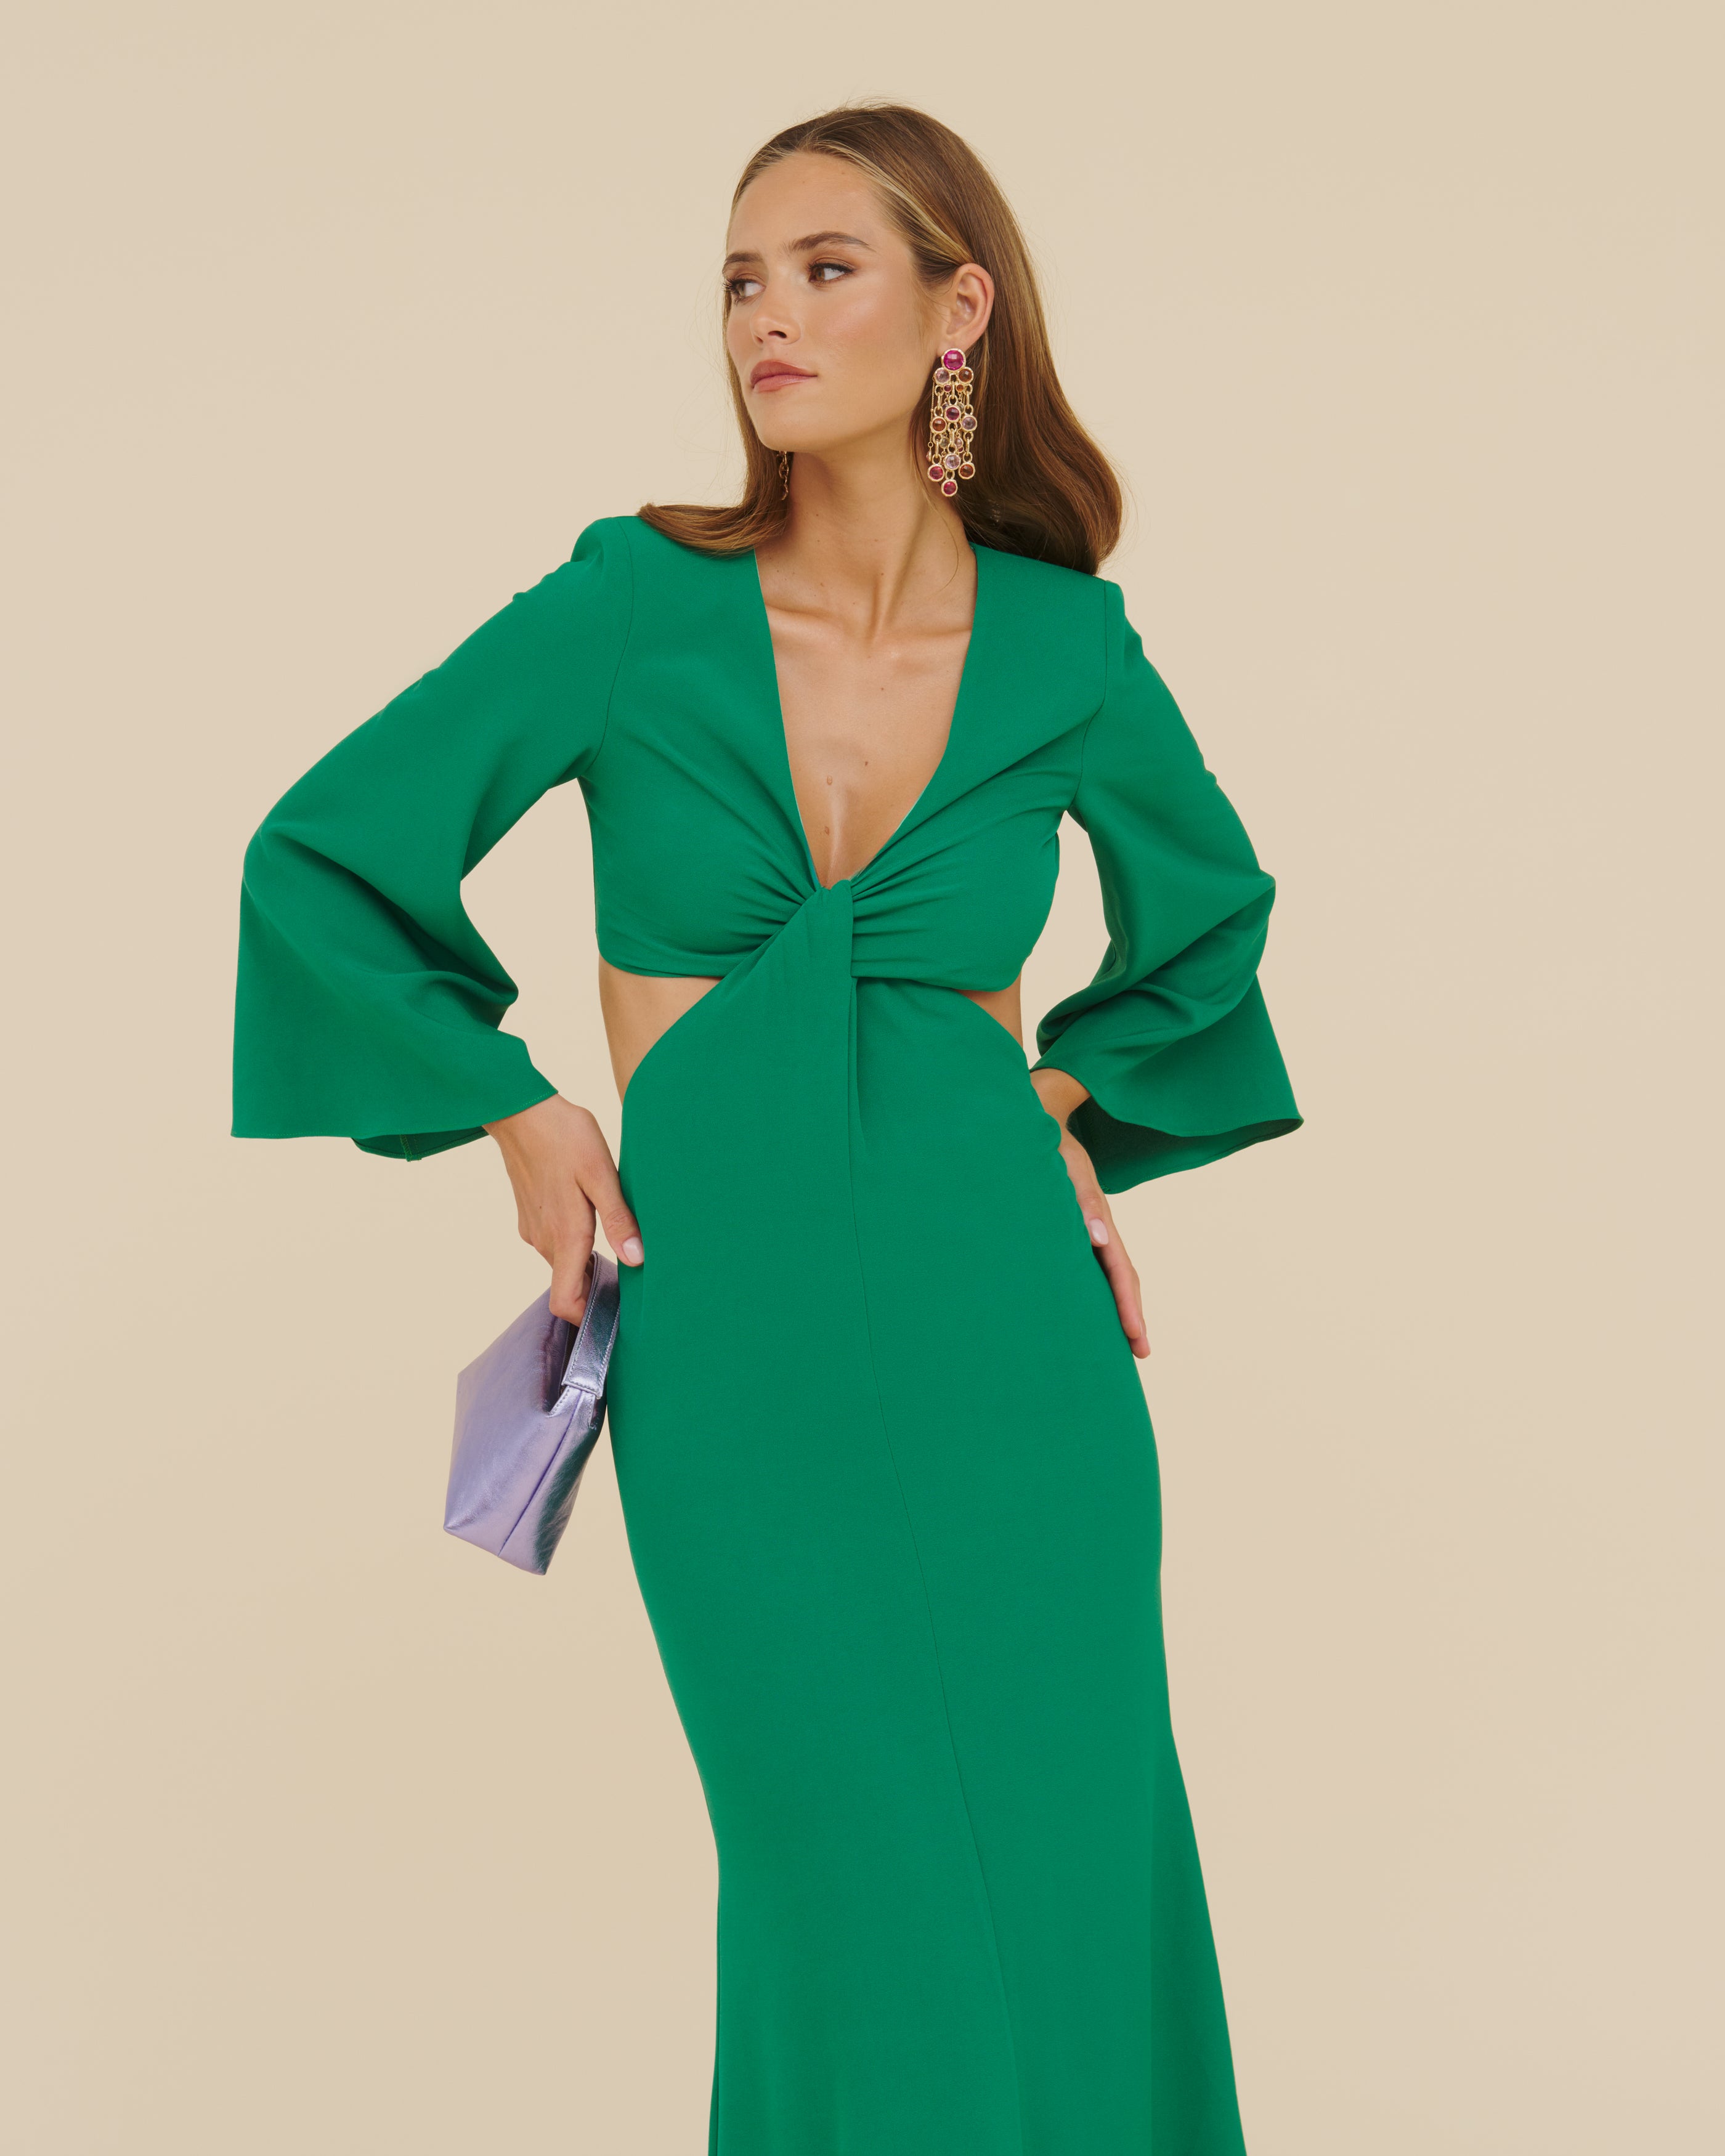 Tripoli Green Dress